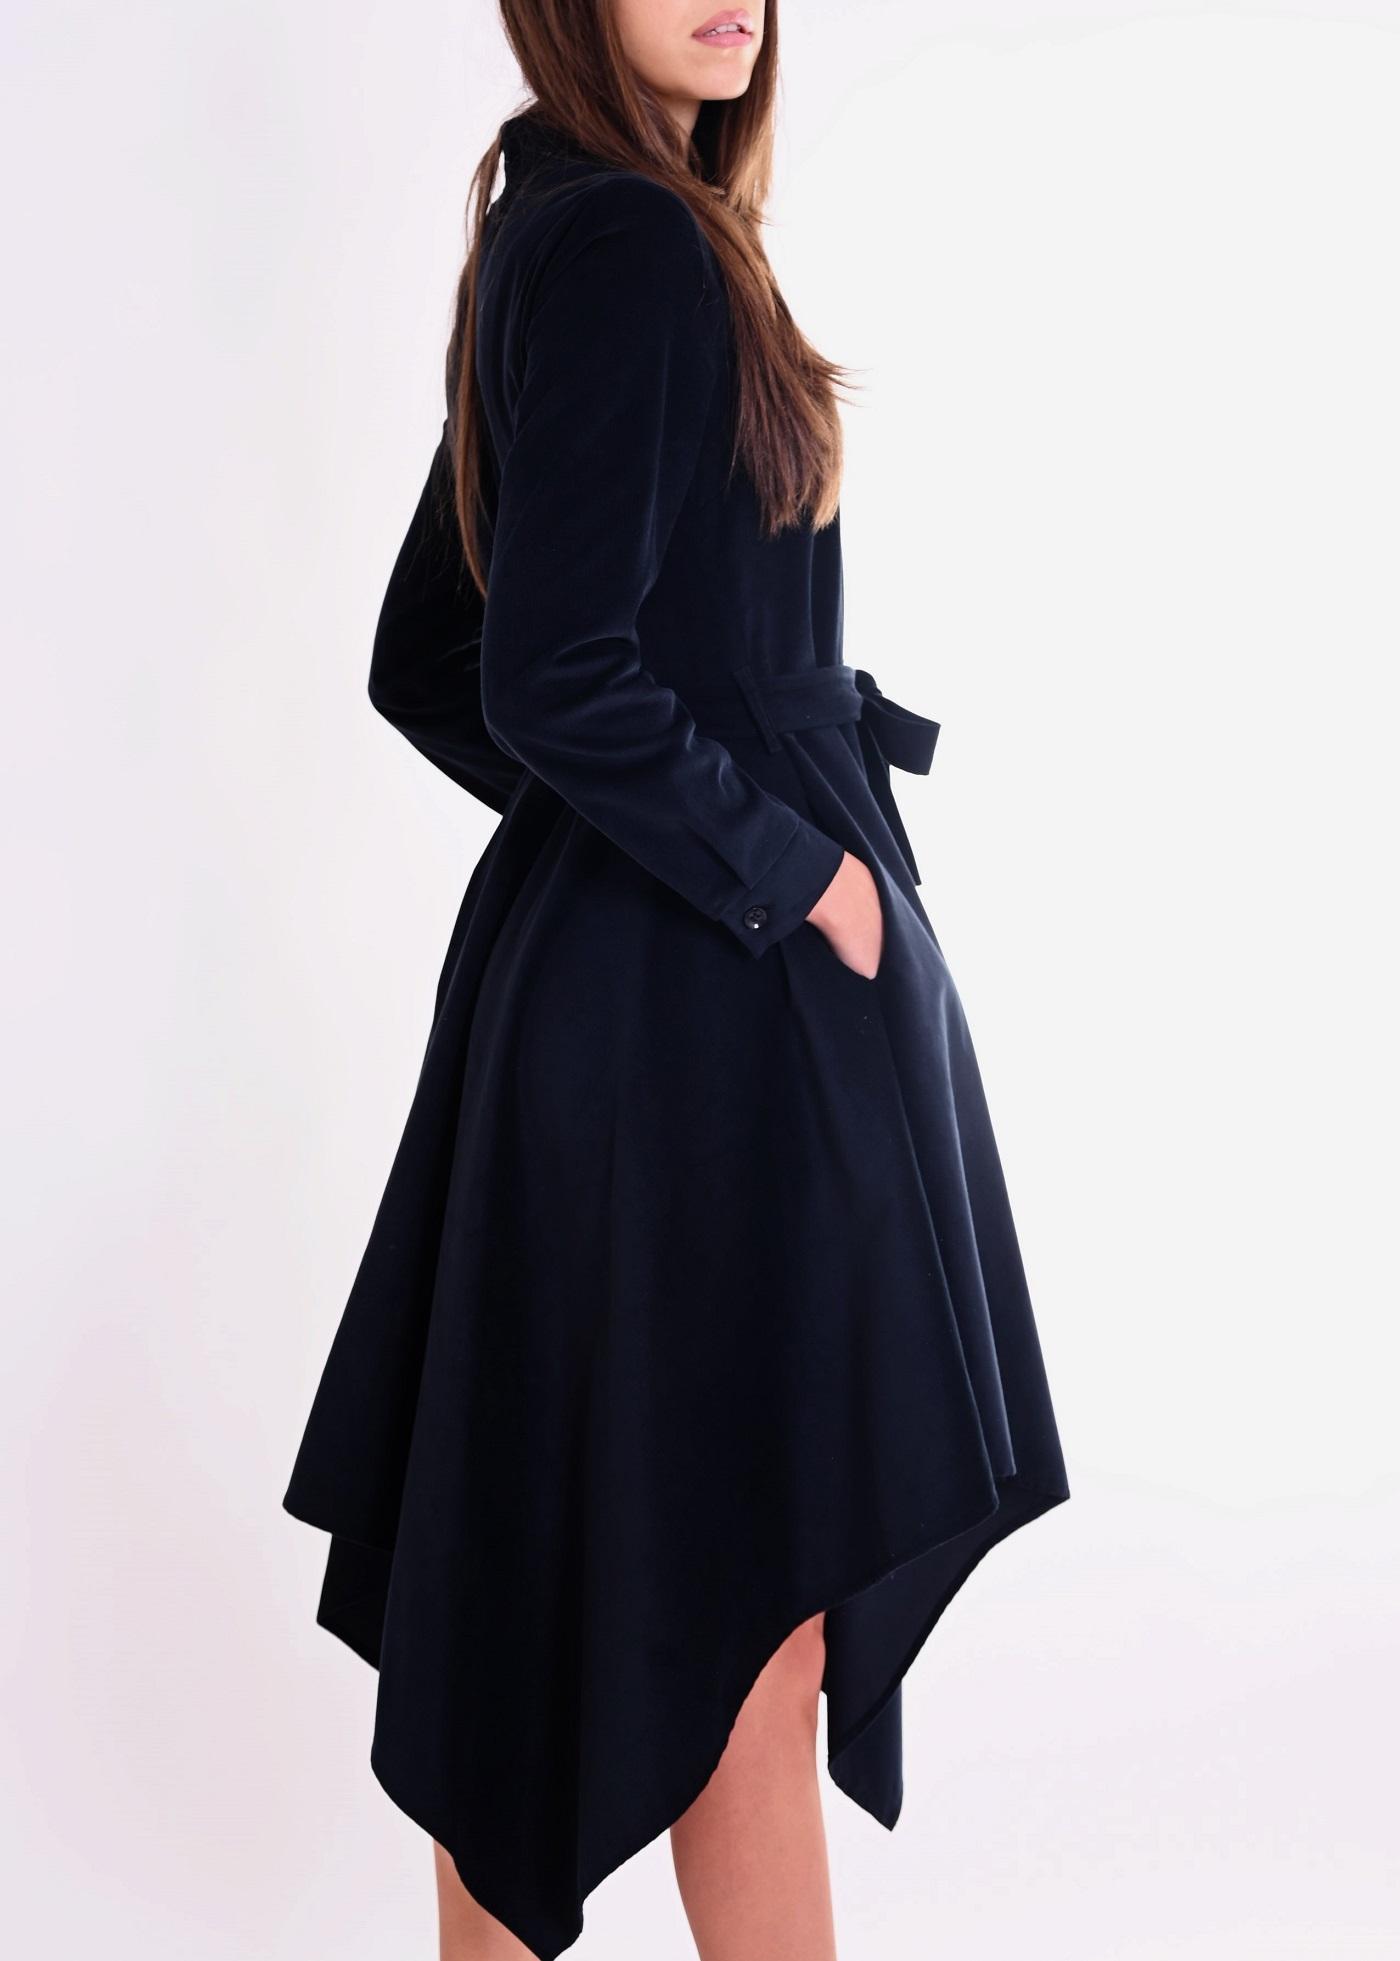 Selected image for PAMUKLIK Ženska haljina od somota sa špicevima SQUARE crna